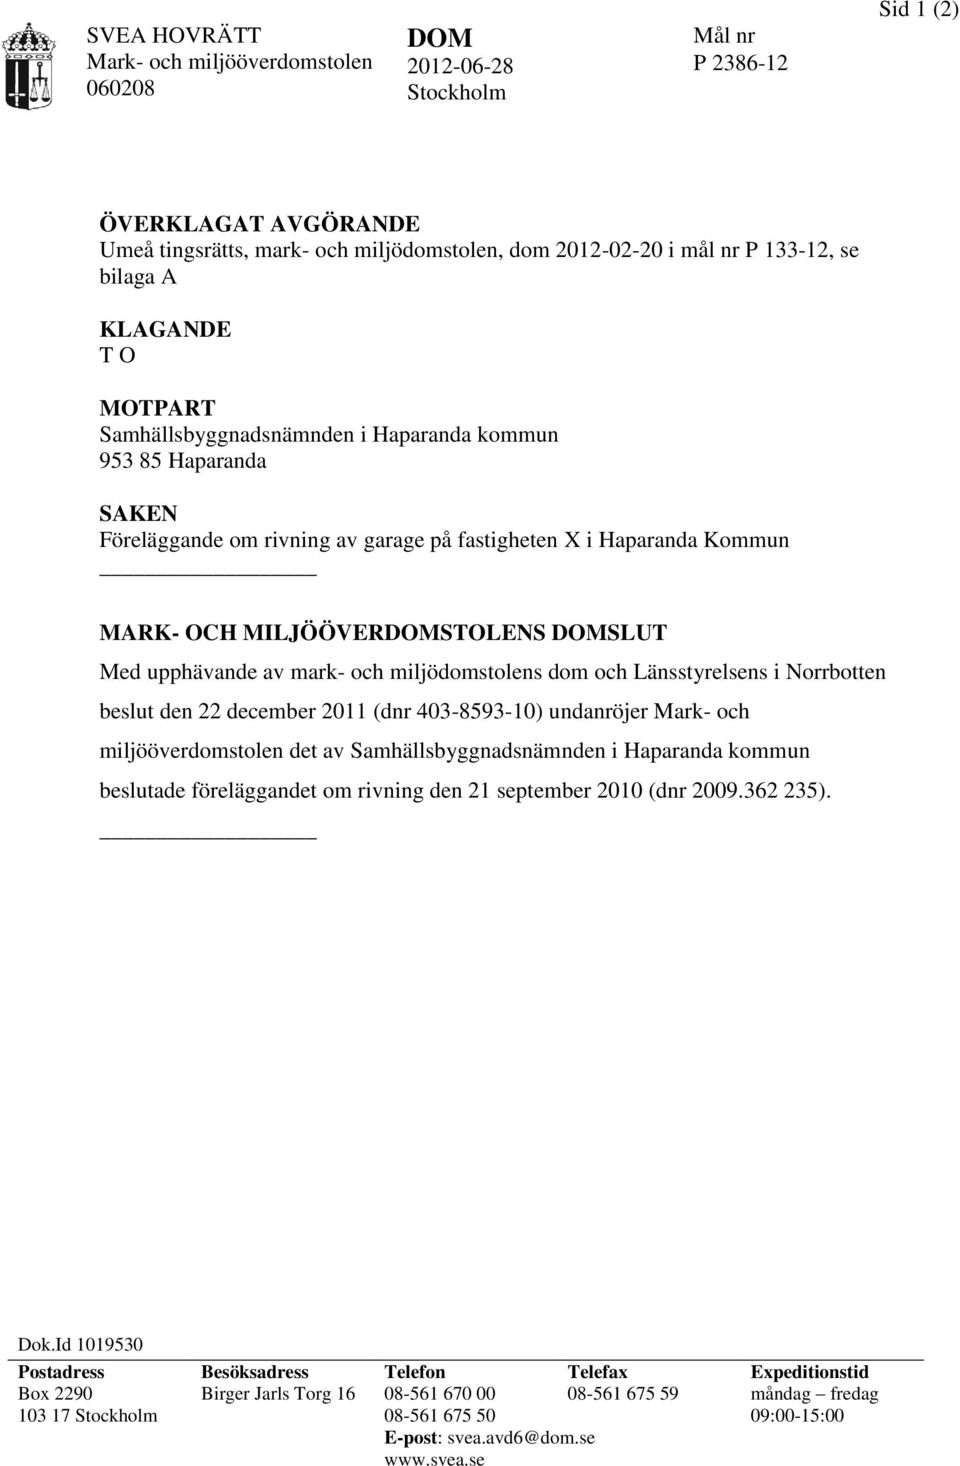 upphävande av mark- och miljödomstolens dom och Länsstyrelsens i Norrbotten beslut den 22 december 2011 (dnr 403-8593-10) undanröjer Mark- och miljööverdomstolen det av Samhällsbyggnadsnämnden i